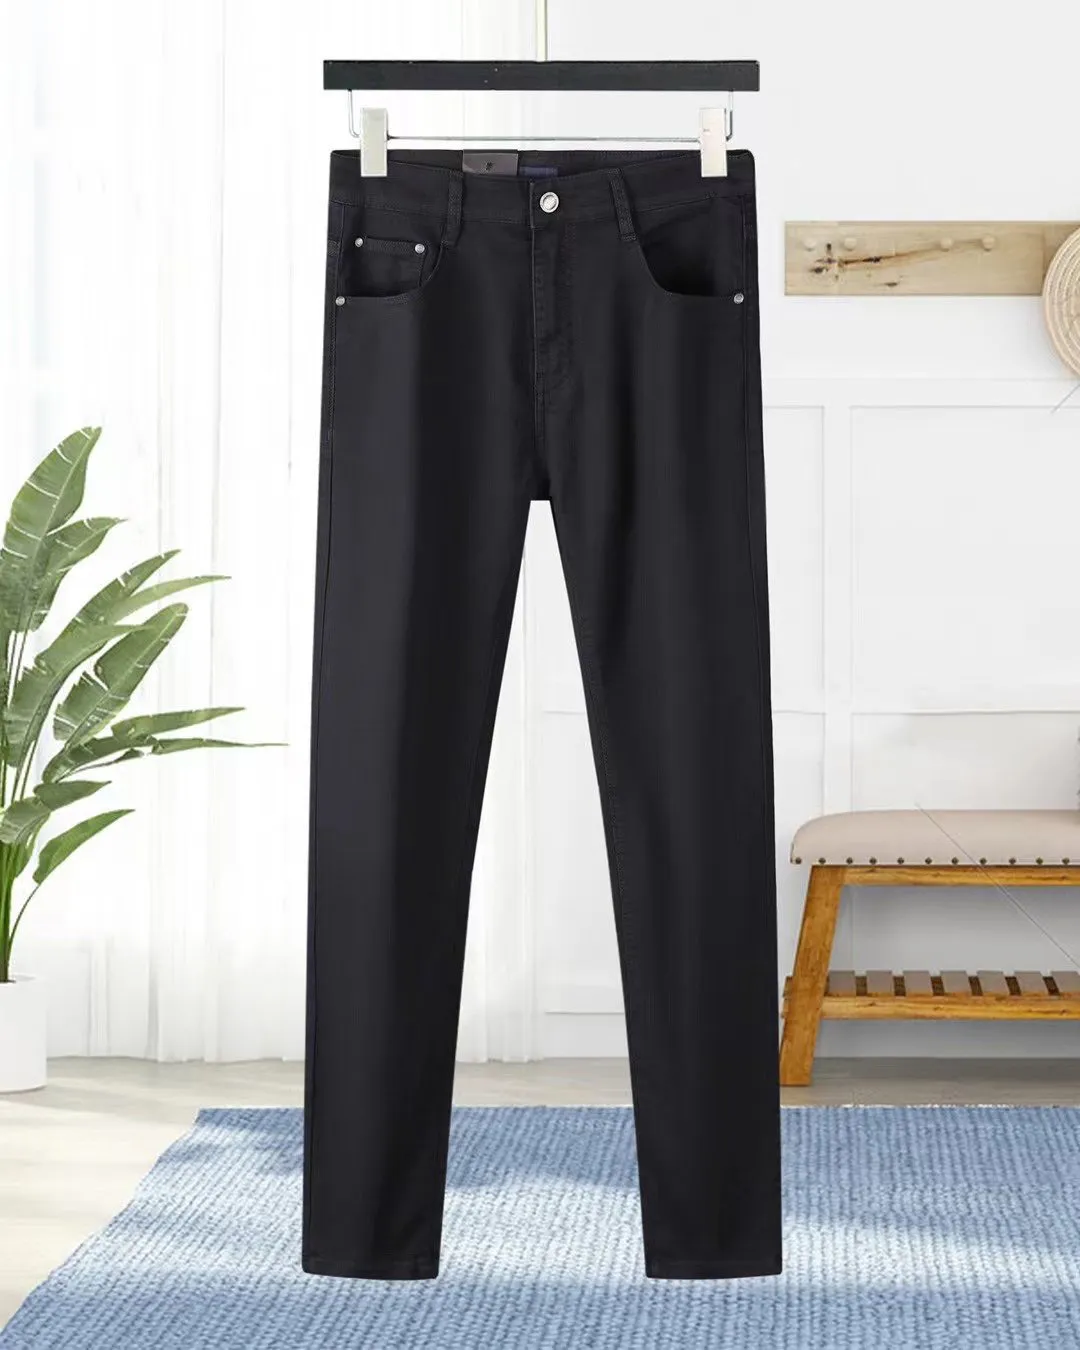 Fioletowe dżinsy dżinsowe spodnie męskie dżinsy designer dżinsów czarne spodnie wysokiej jakości prosta design retro streetwear swobodne dresowe projektanci joggers pant #41